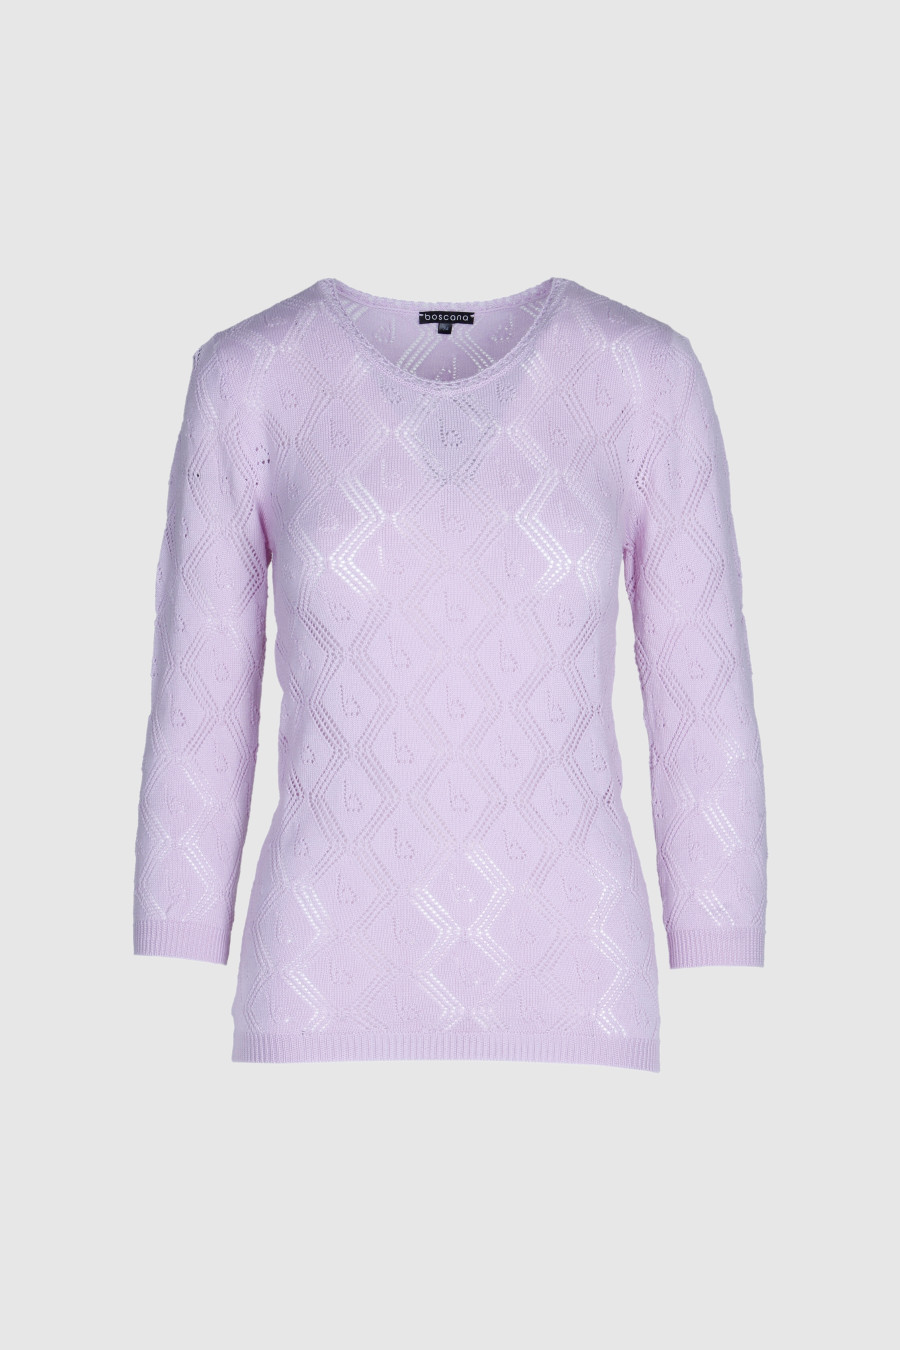 Pullover gestrickt in Lavendel, mit Muster und verkürzten Arm, Merinowolle, Rundhals, lila, uni, transparent